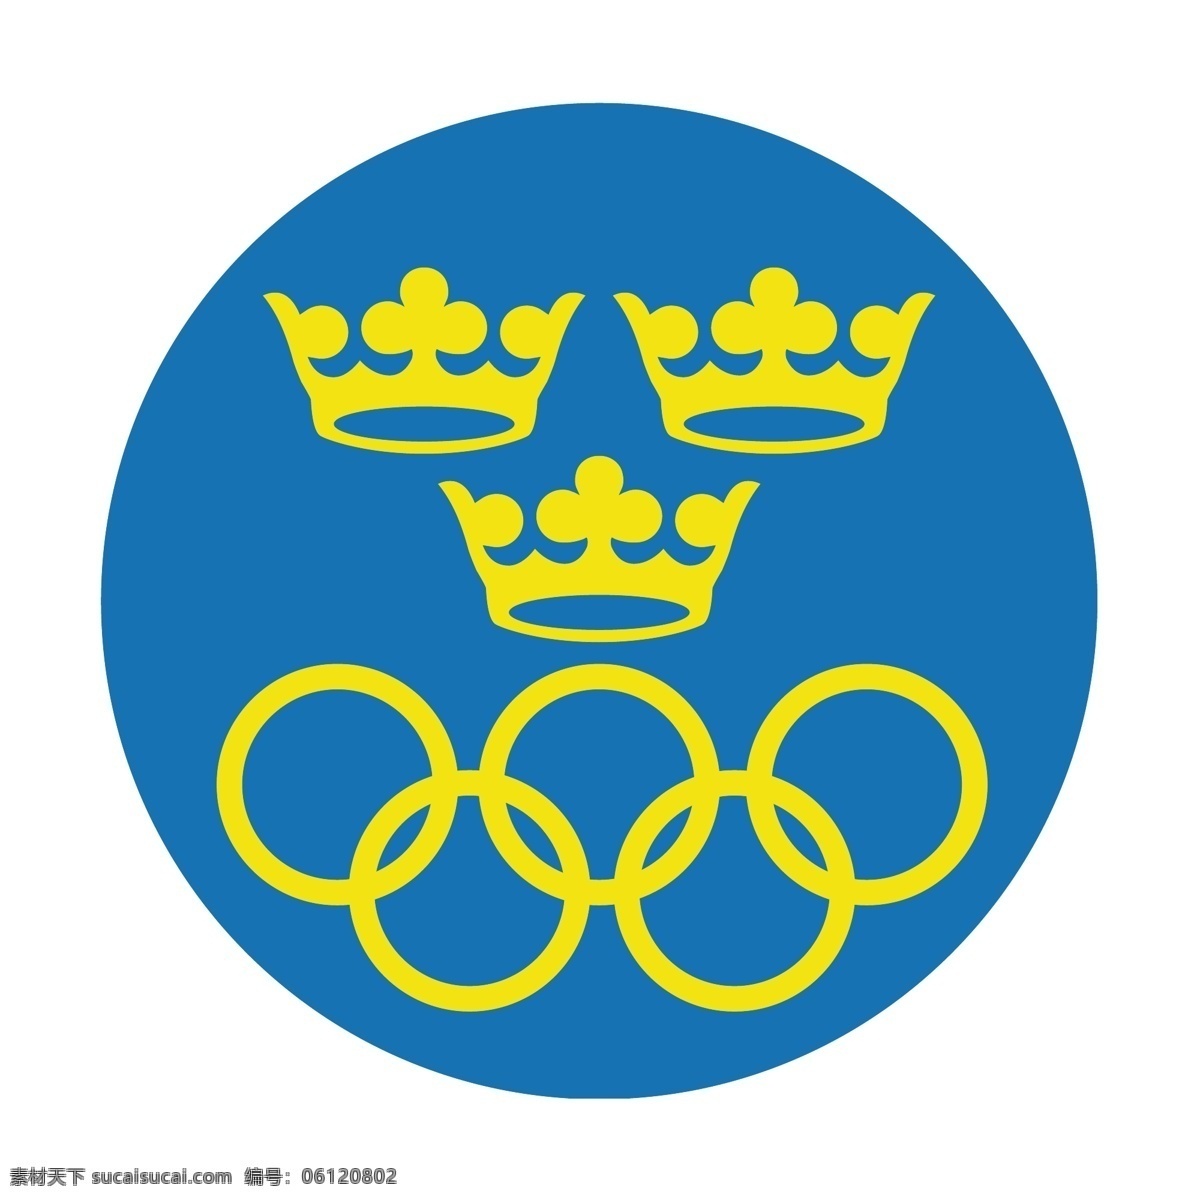 瑞典 olympiska kommitte 白色